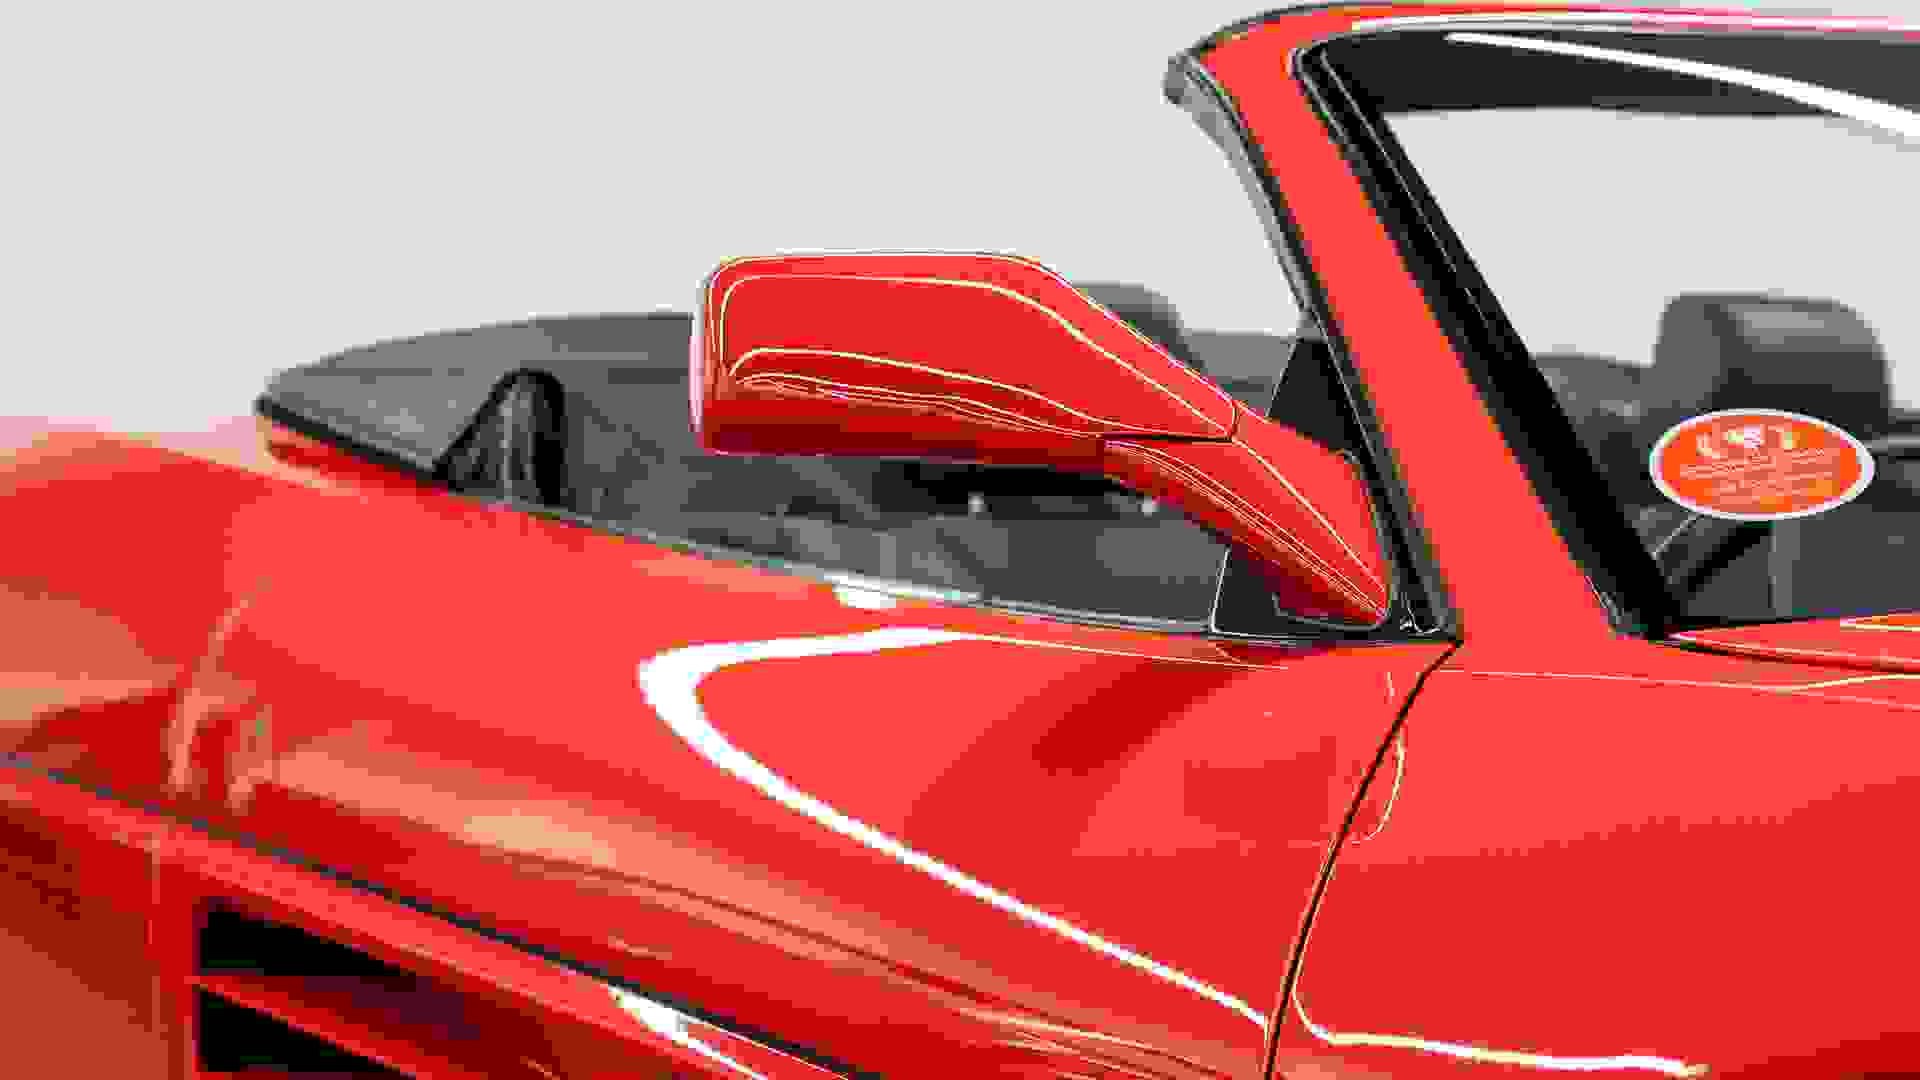 Ferrari 348 Photo 311dcc4c-c4e3-41ae-a76a-fa6bd03ad1e2.jpg